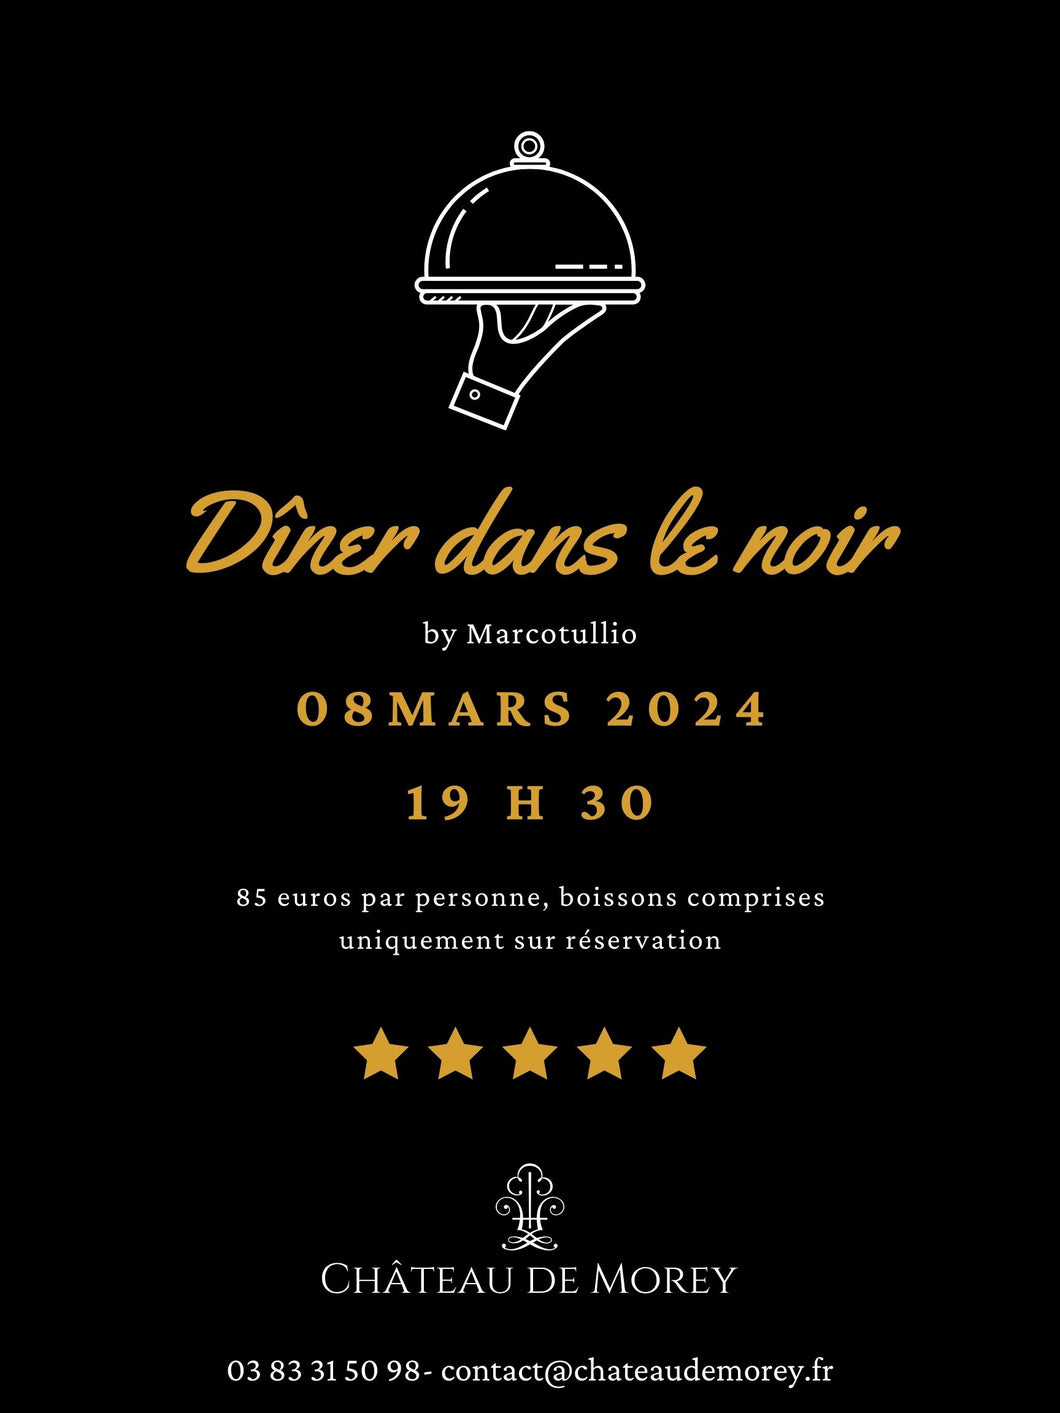 Nuit + Diner dans le Noir = 08 mars 2024 pour 2 Personnes